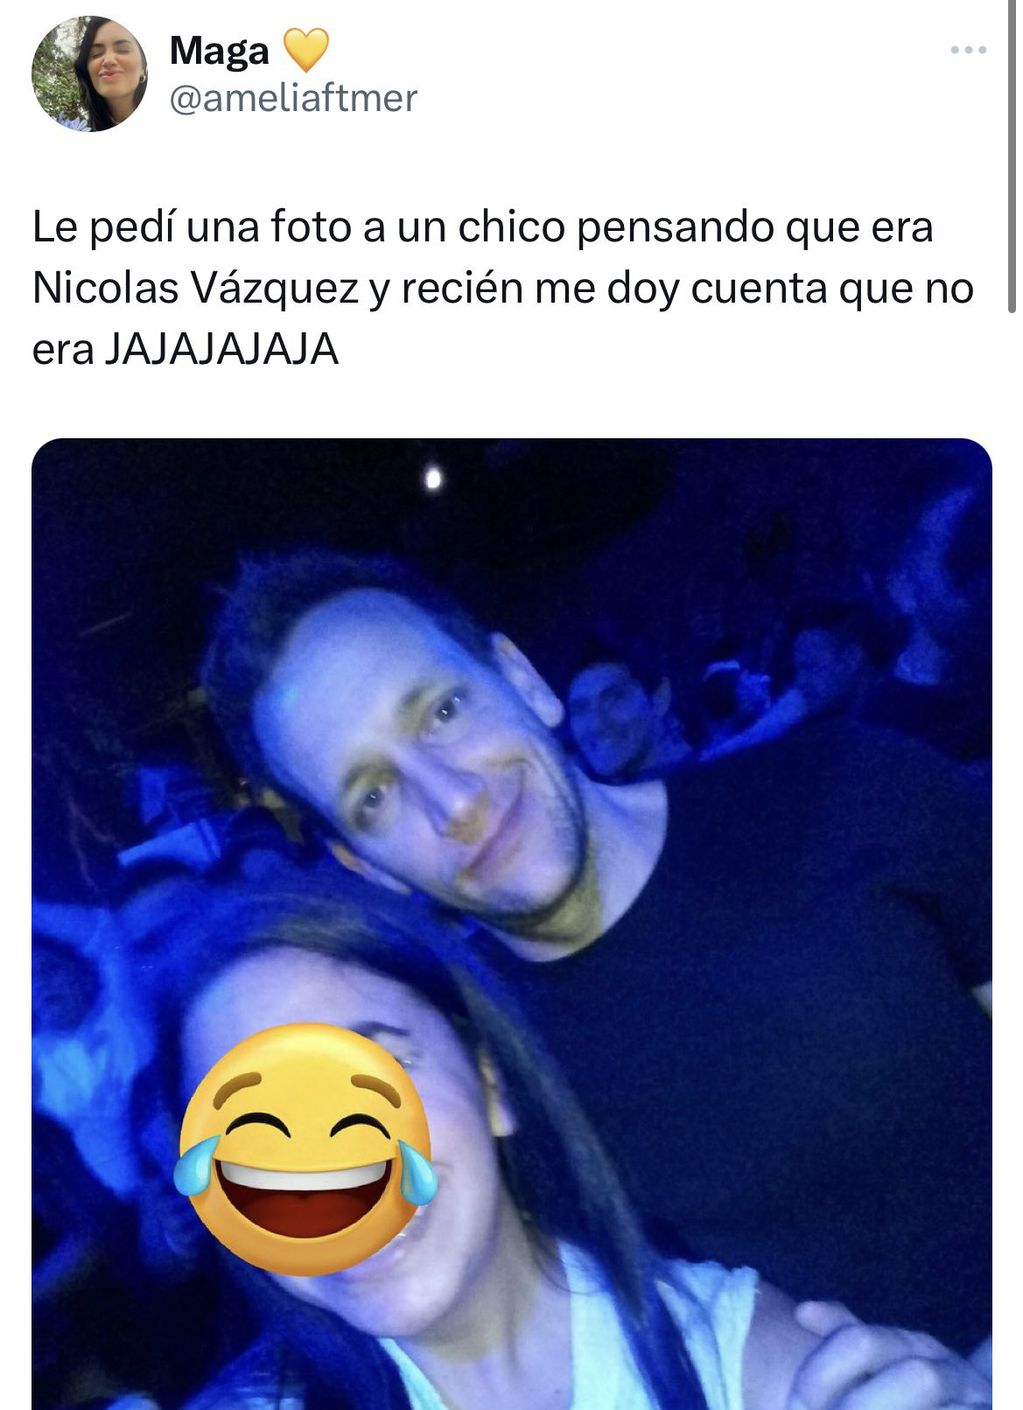 una usuaria se volvió viral al sacarse una foto con un chico muy parecido a Nicolás Vázquez